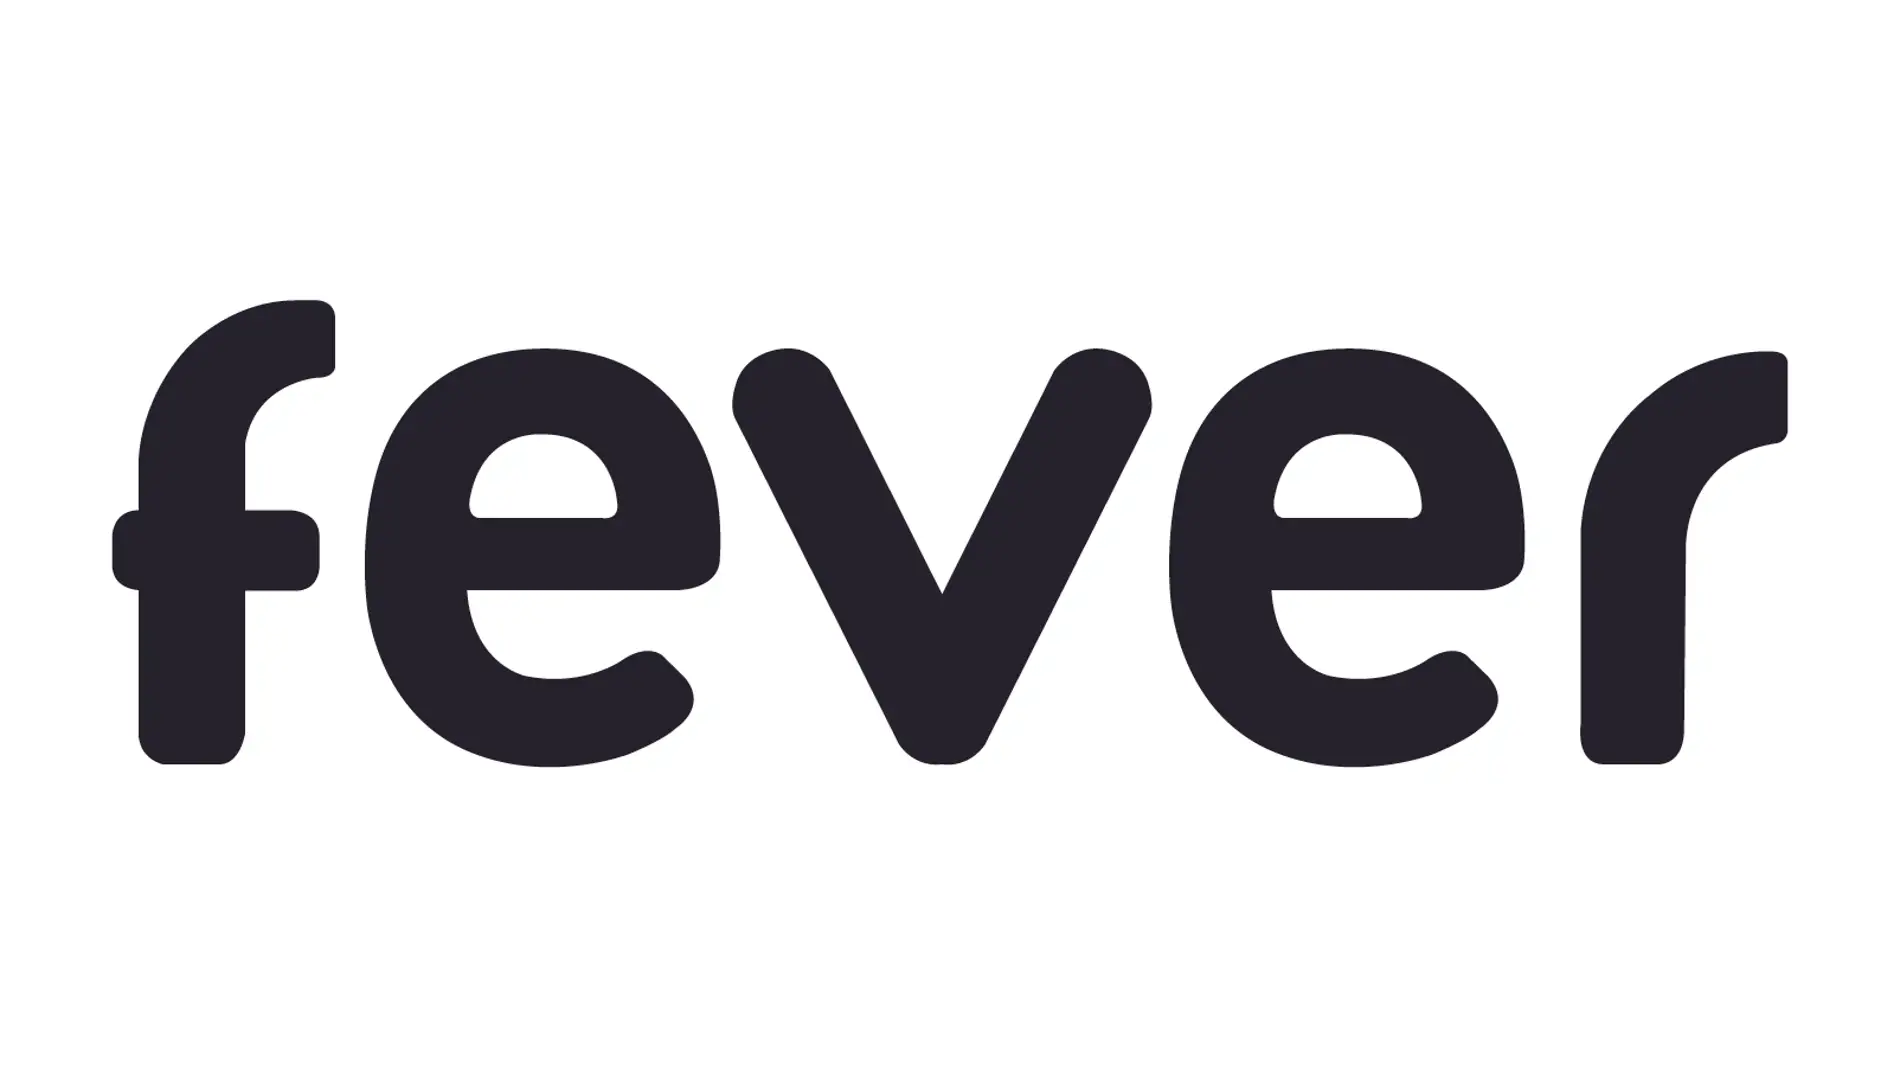 Logo de Fever